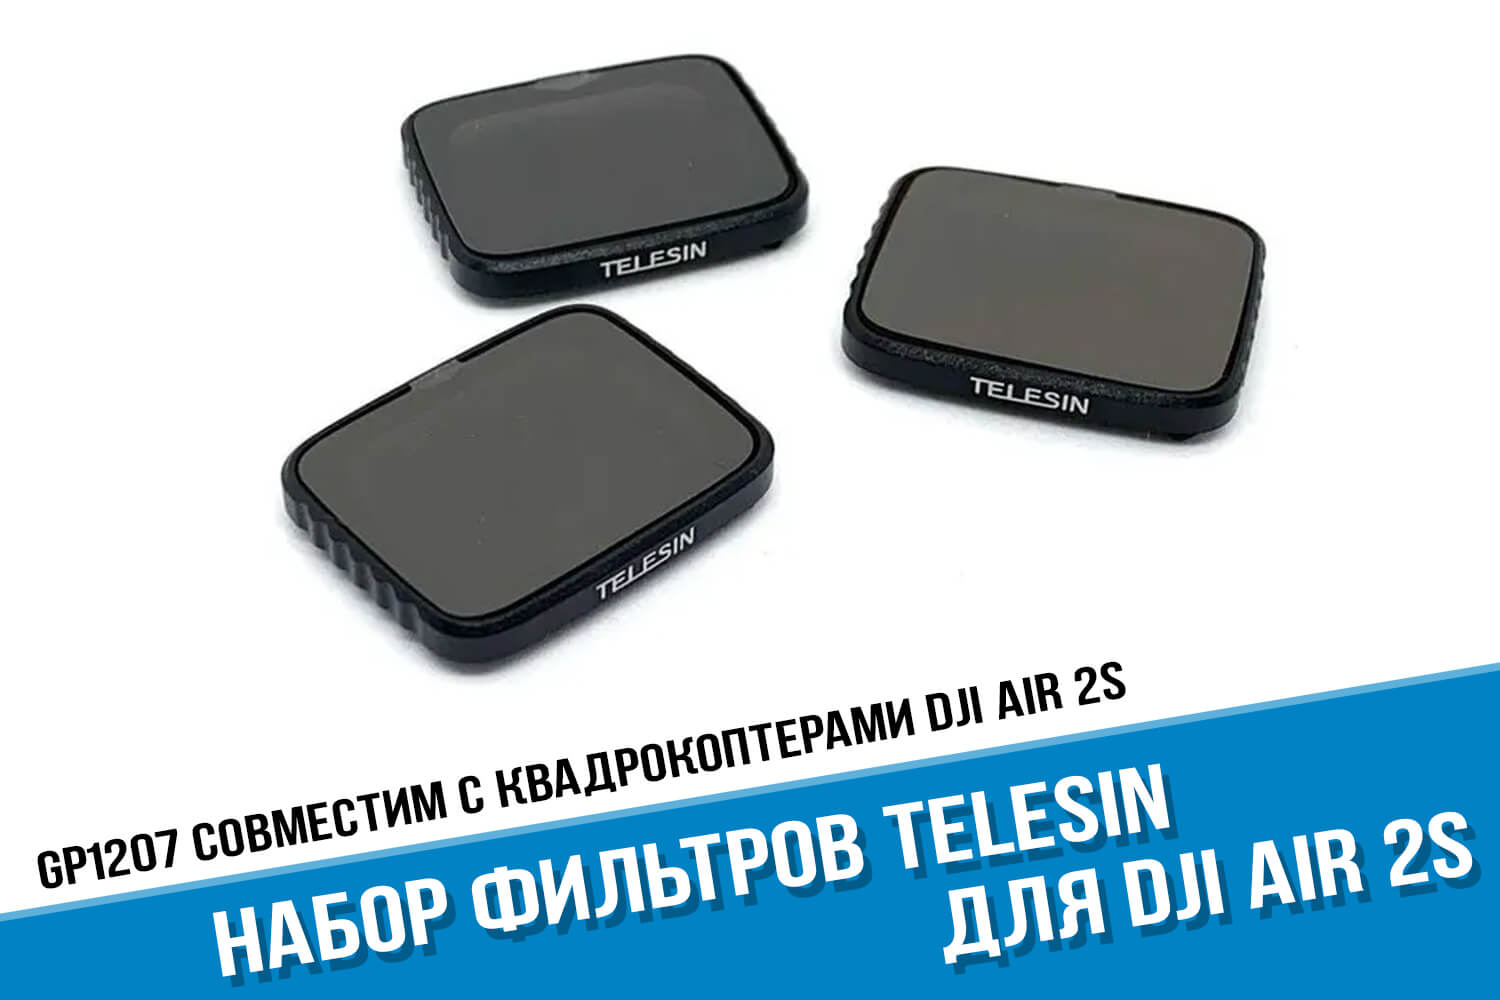 Поляризационные фильтры для коптера DJI Air 2S фирмы Telesin